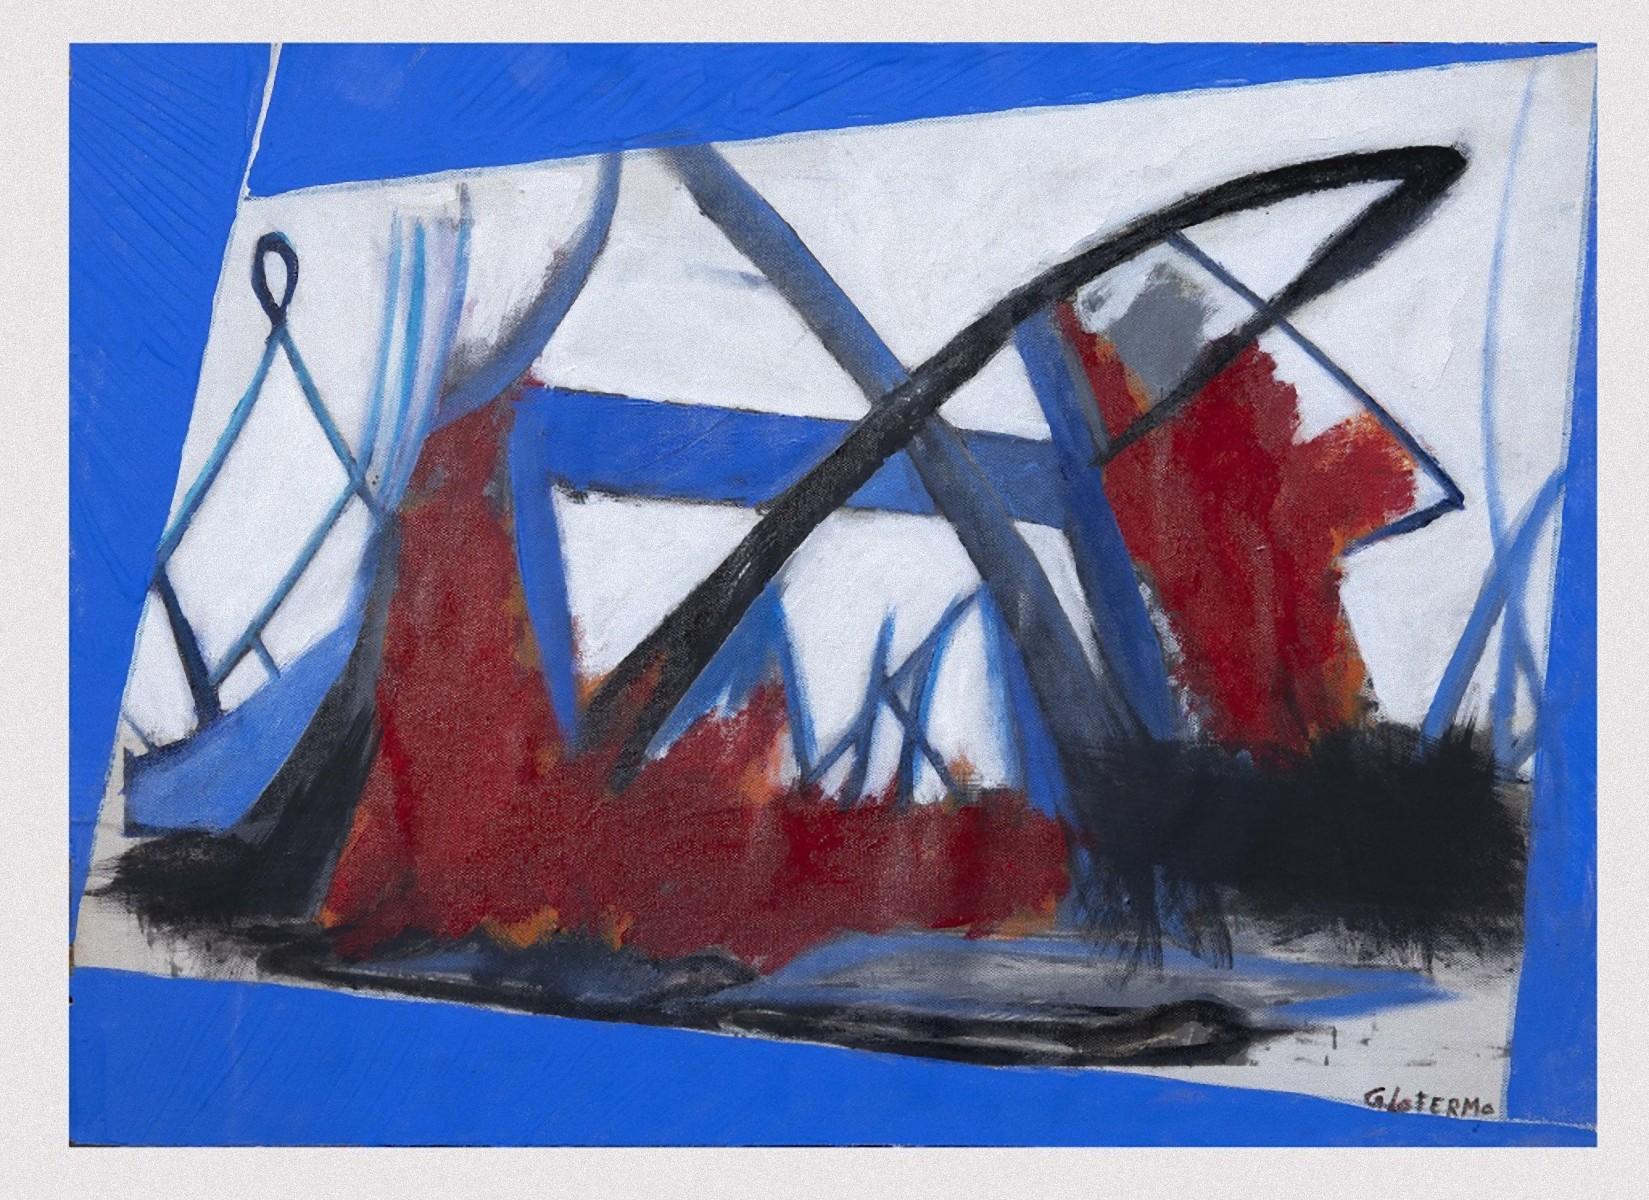 Informal Painting ist ein Originalkunstwerk von Giorgio Lo Fermo (geb. 1947) aus dem Jahr 2008.

Original-Ölgemälde auf Leinwand, aufgetragen auf Sperrholz.

Handsigniert vom Künstler am linken unteren Rand: G. Lo Fermo.

Neuwertiger